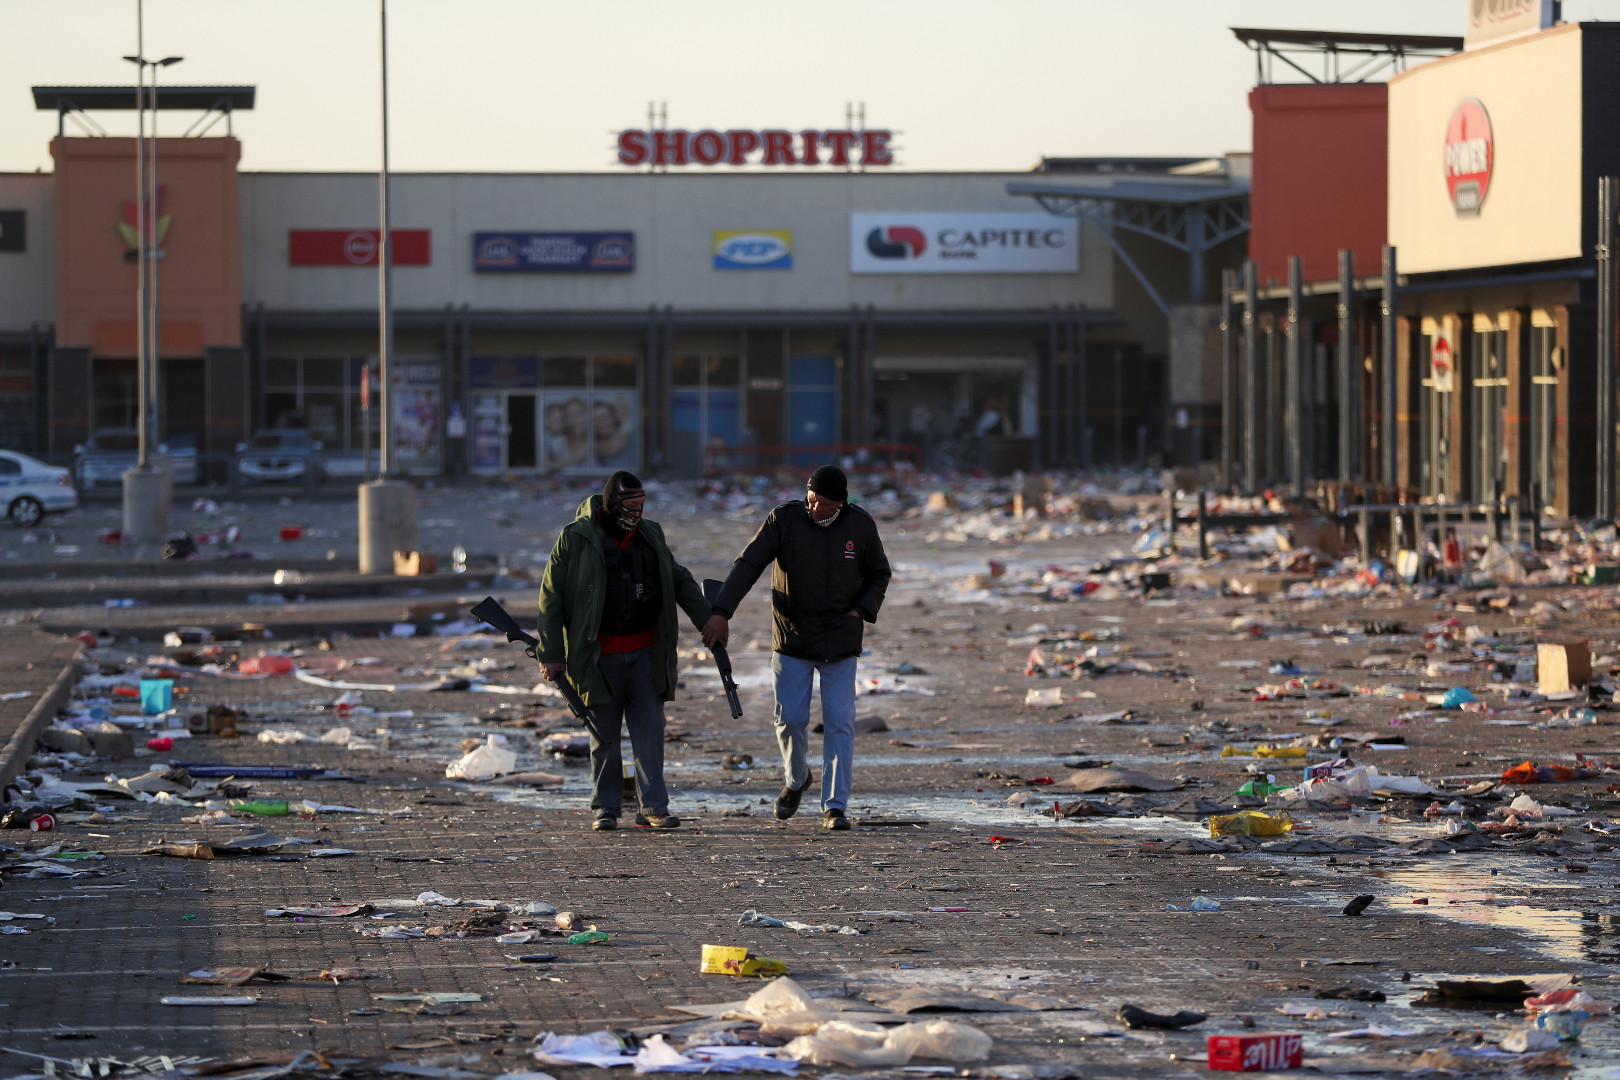 Haos u Južnoj Africi: Gore tržni centri, ubijeno preko 70 ljudi